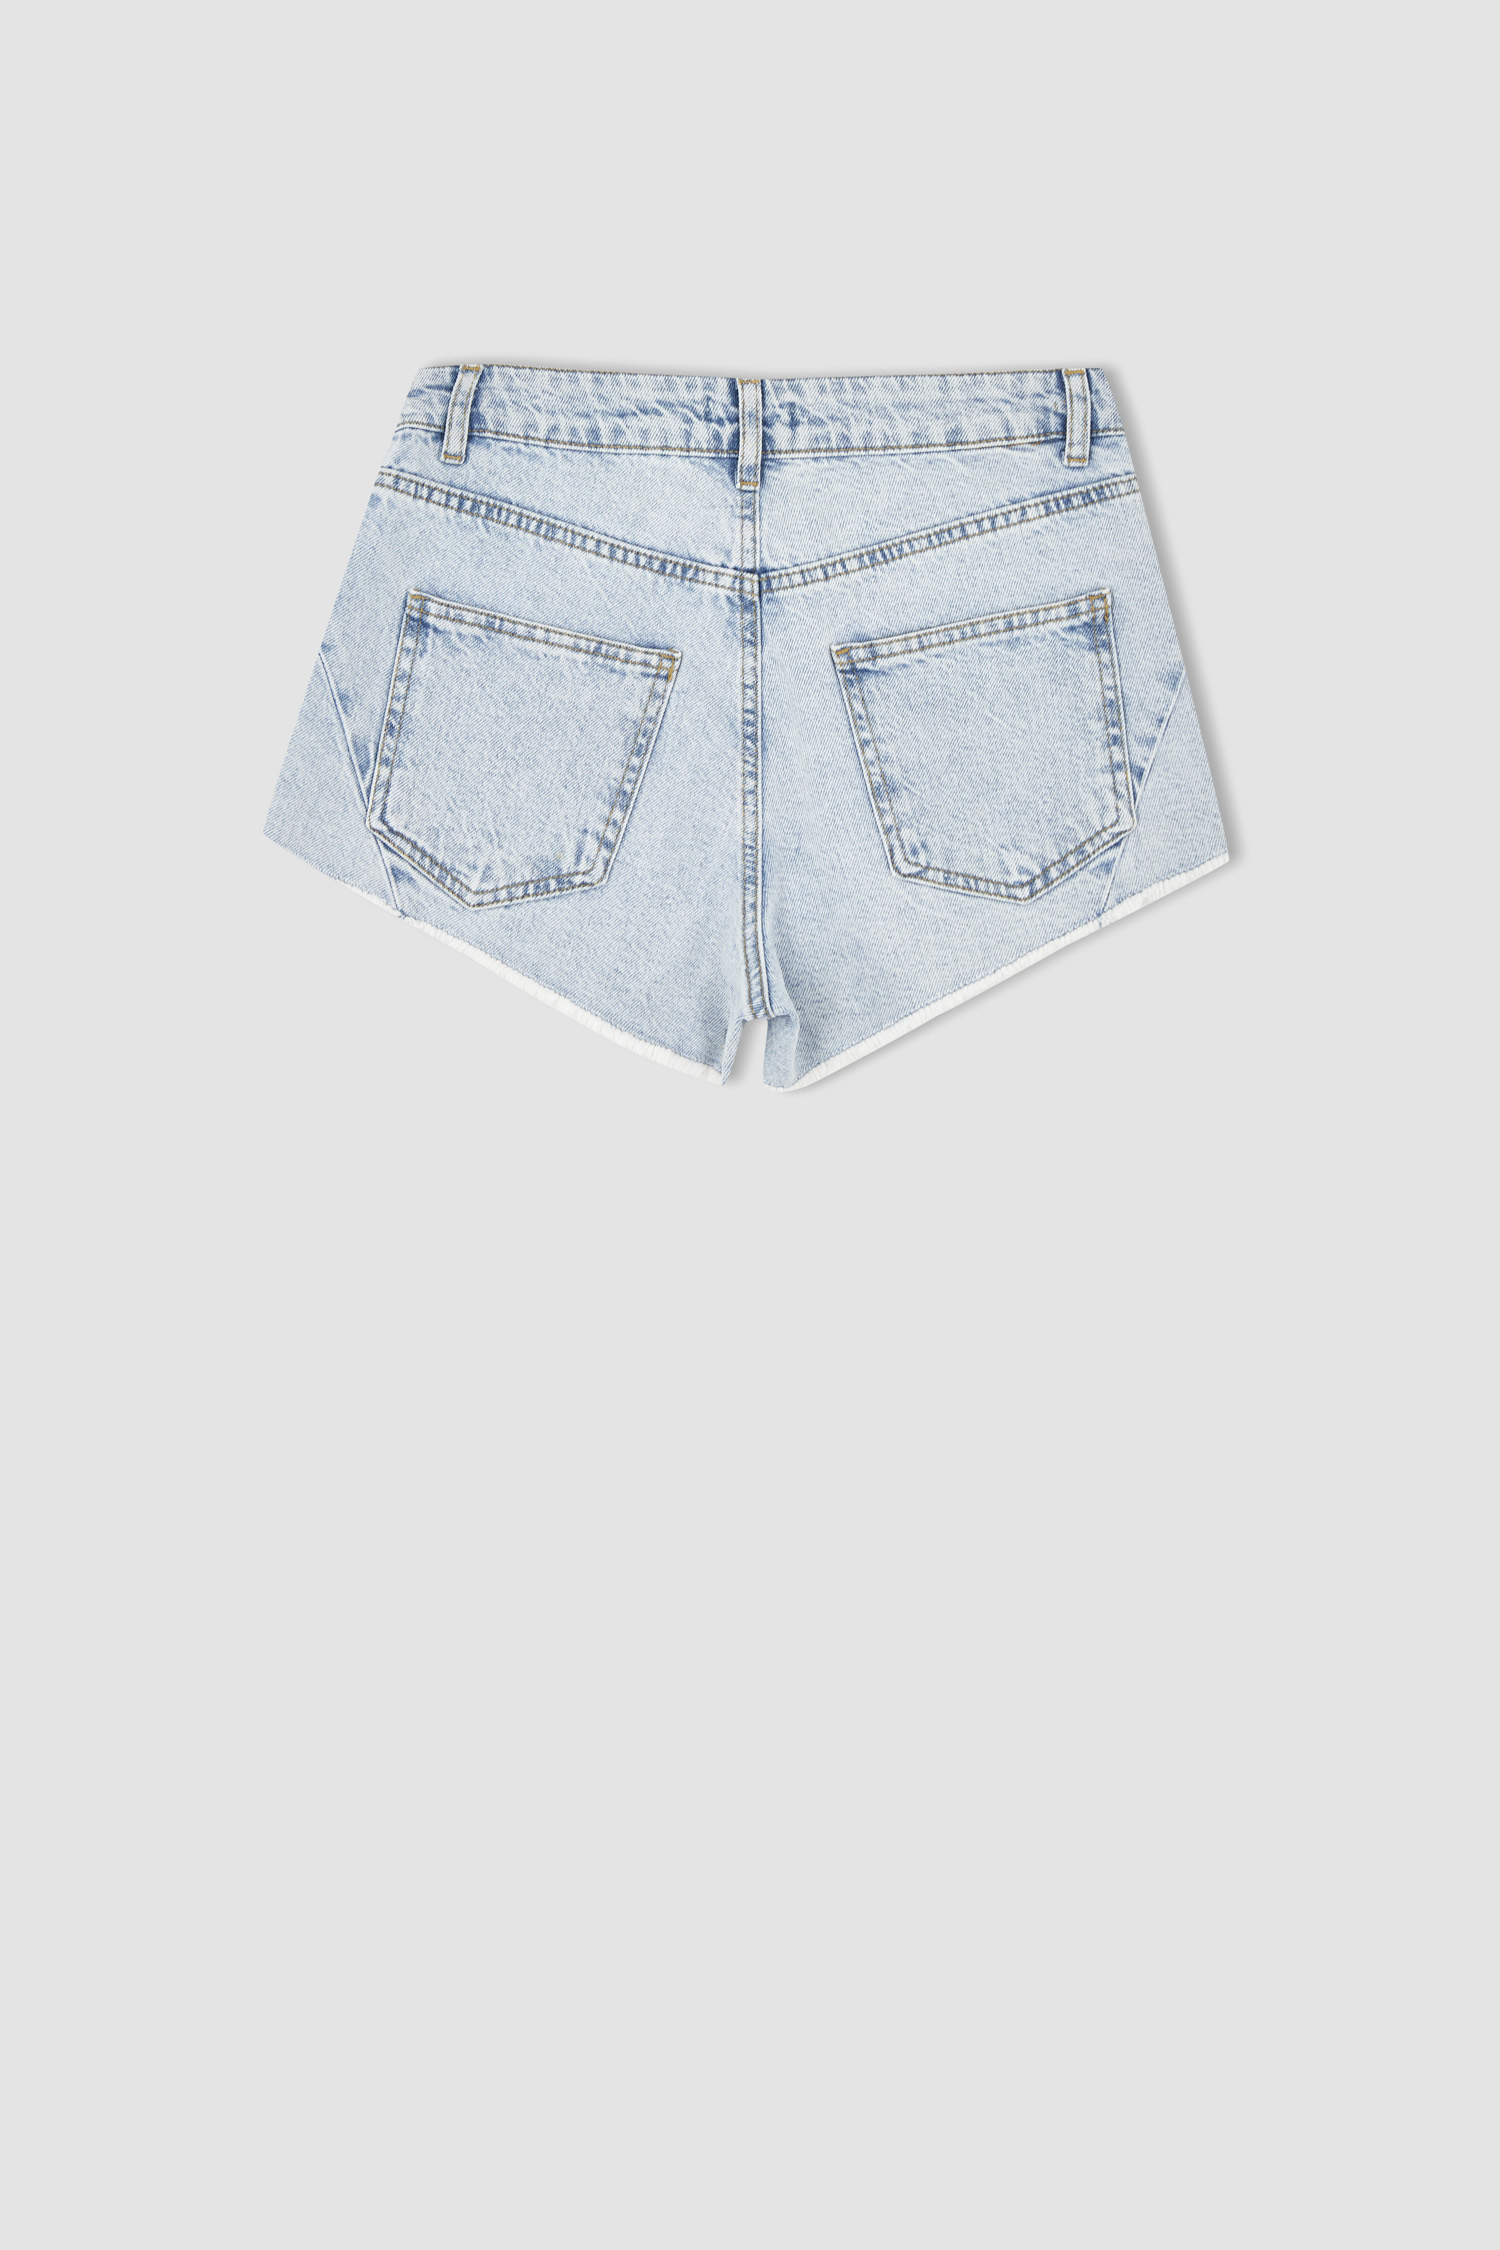 Buy Khaki Trousers  Pants for Men by BREAKBOUNCE Online  Ajiocom